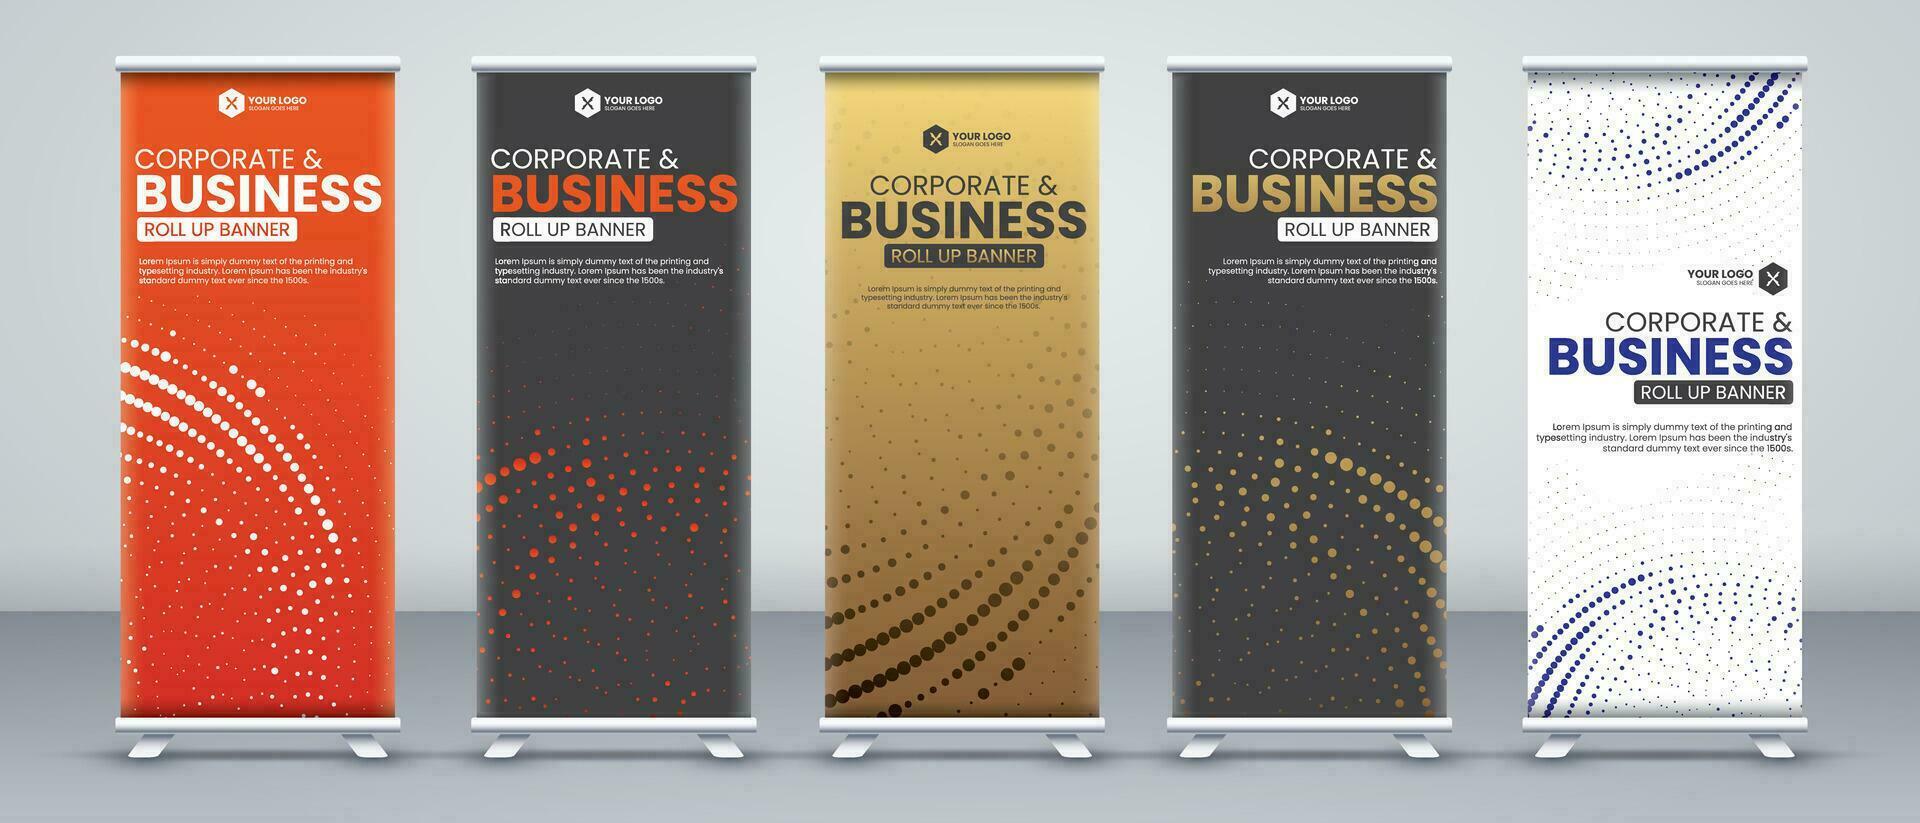 korporativ Geschäft Konferenz rollen oben Banner Designs zum x Stand mit Luxus und Auge eingängig orange, Schwarz, Gold und Weiß Farben mit modern abstrakt Formen vektor